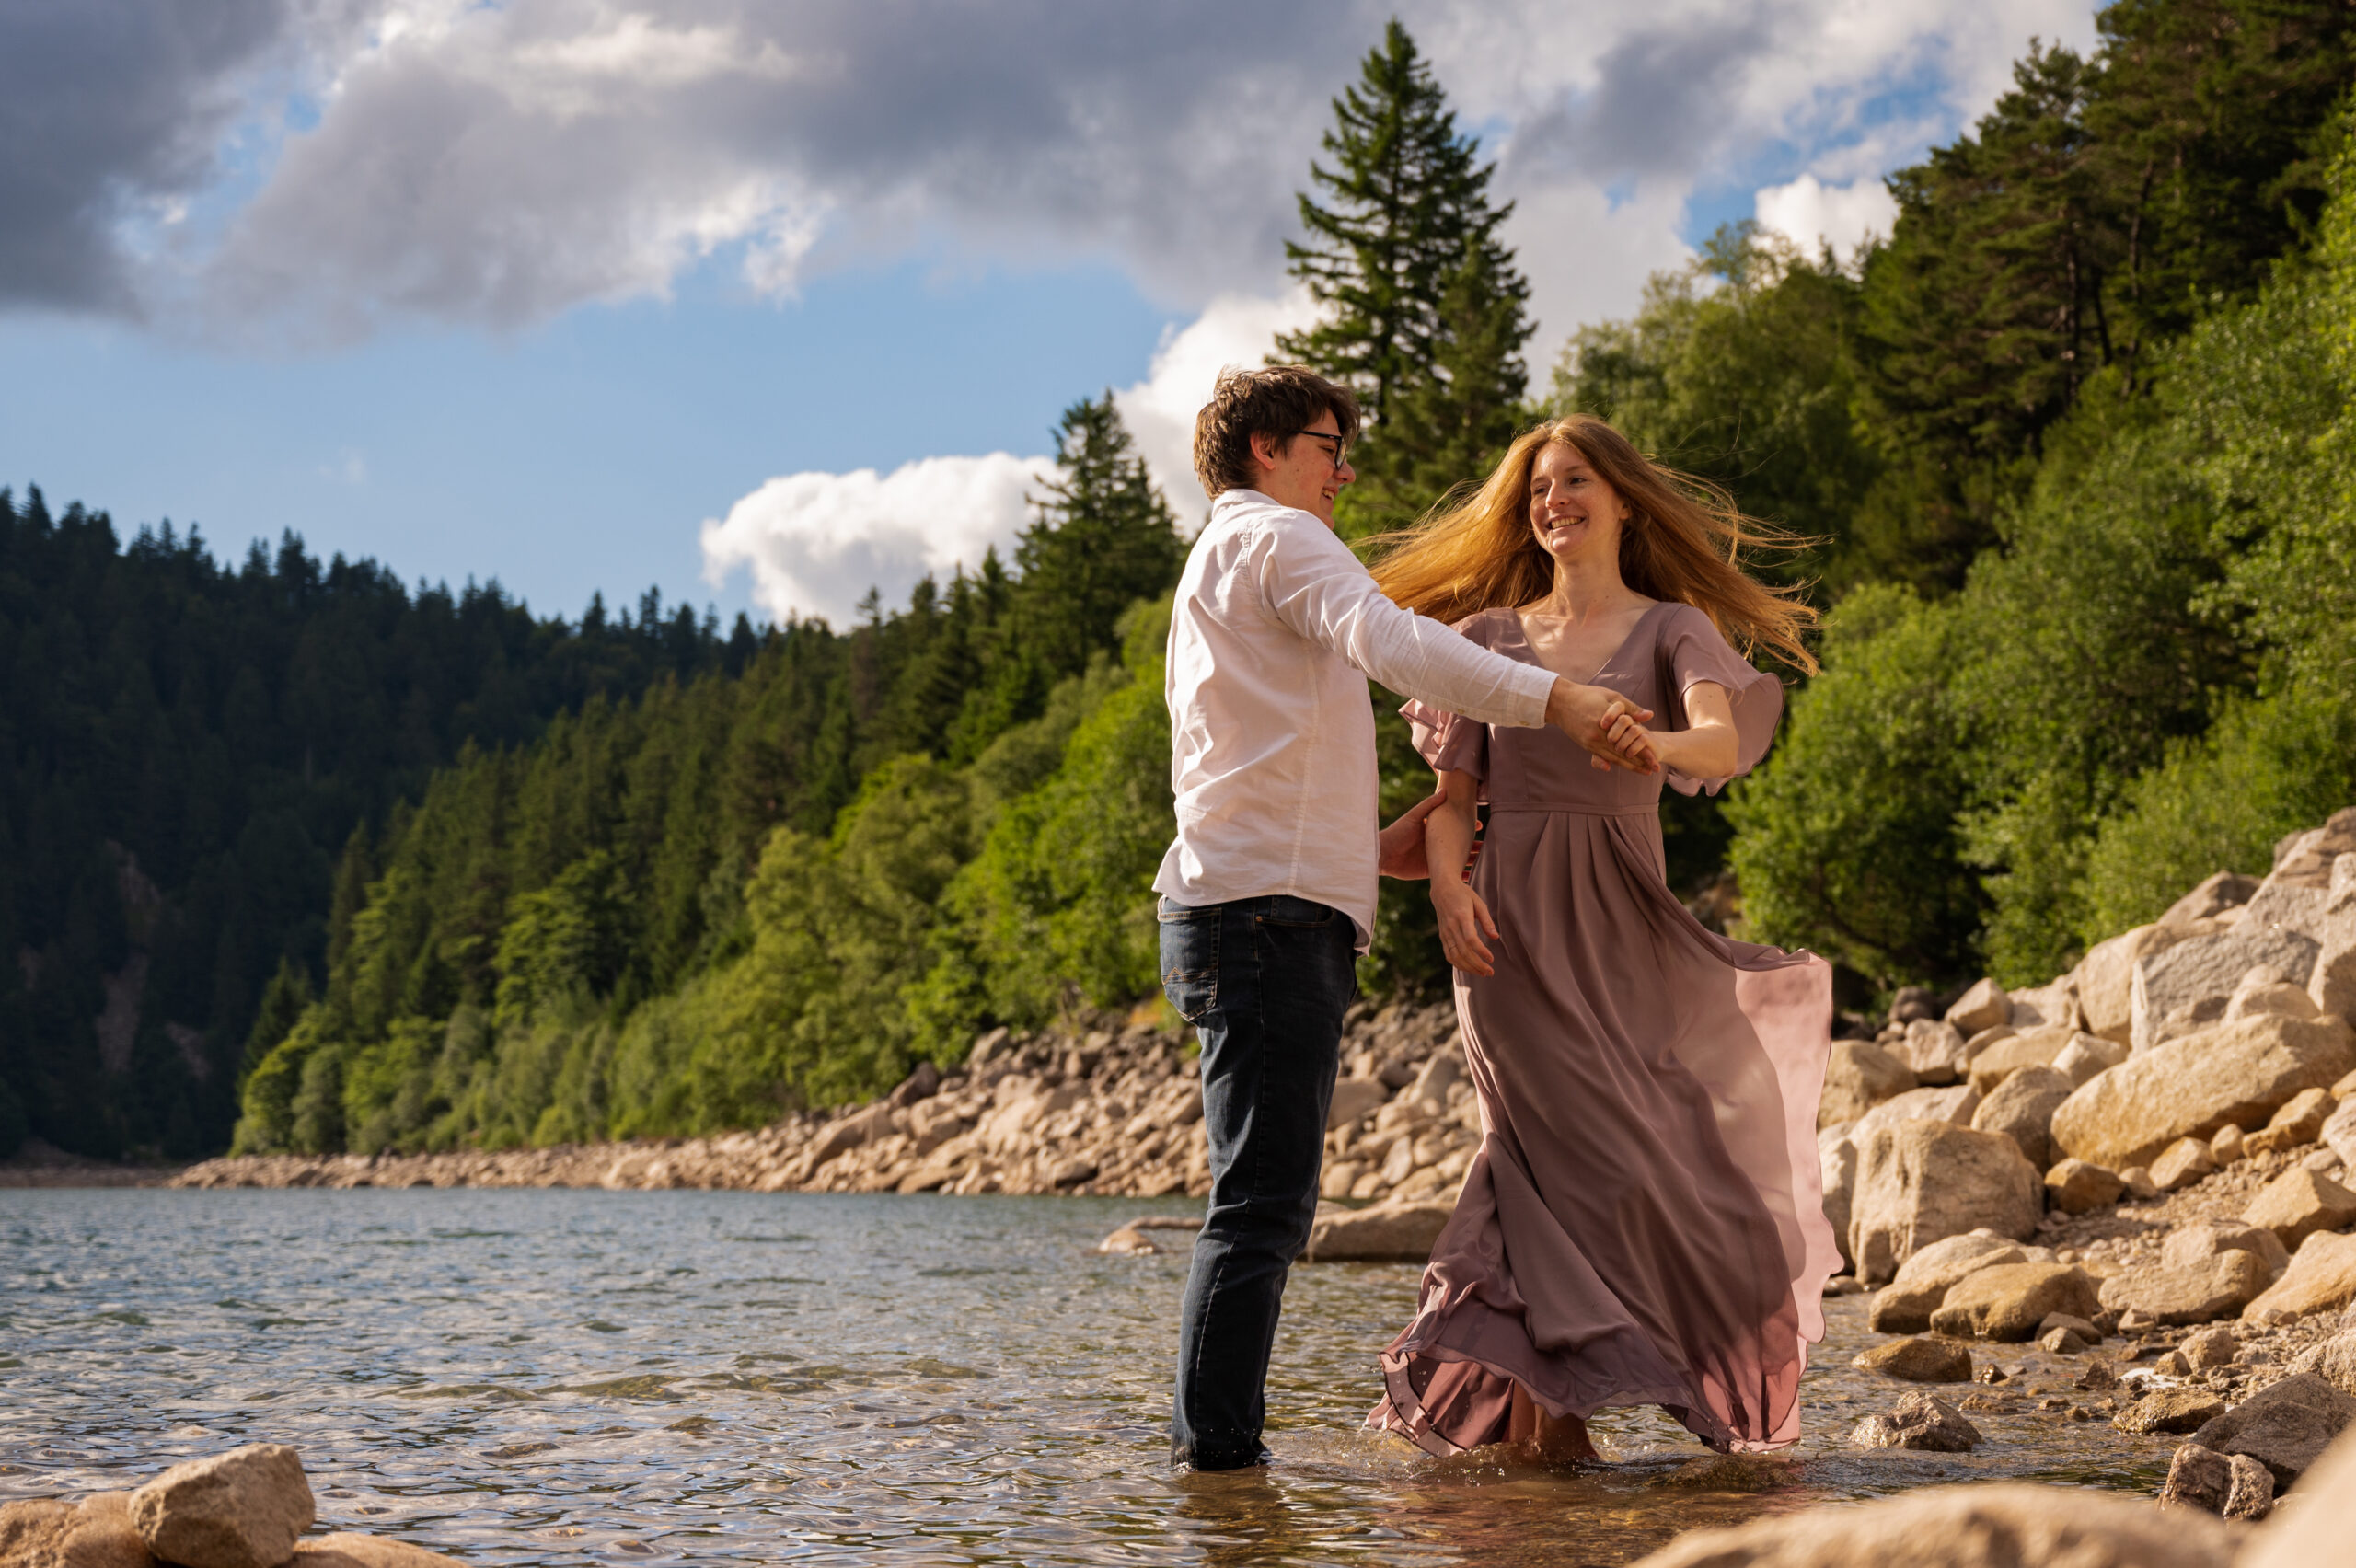 photographe professionnelle couple amour complicité tendresse extérieur lac pied dans l'eau couleur naturelle danse rire foret montagne